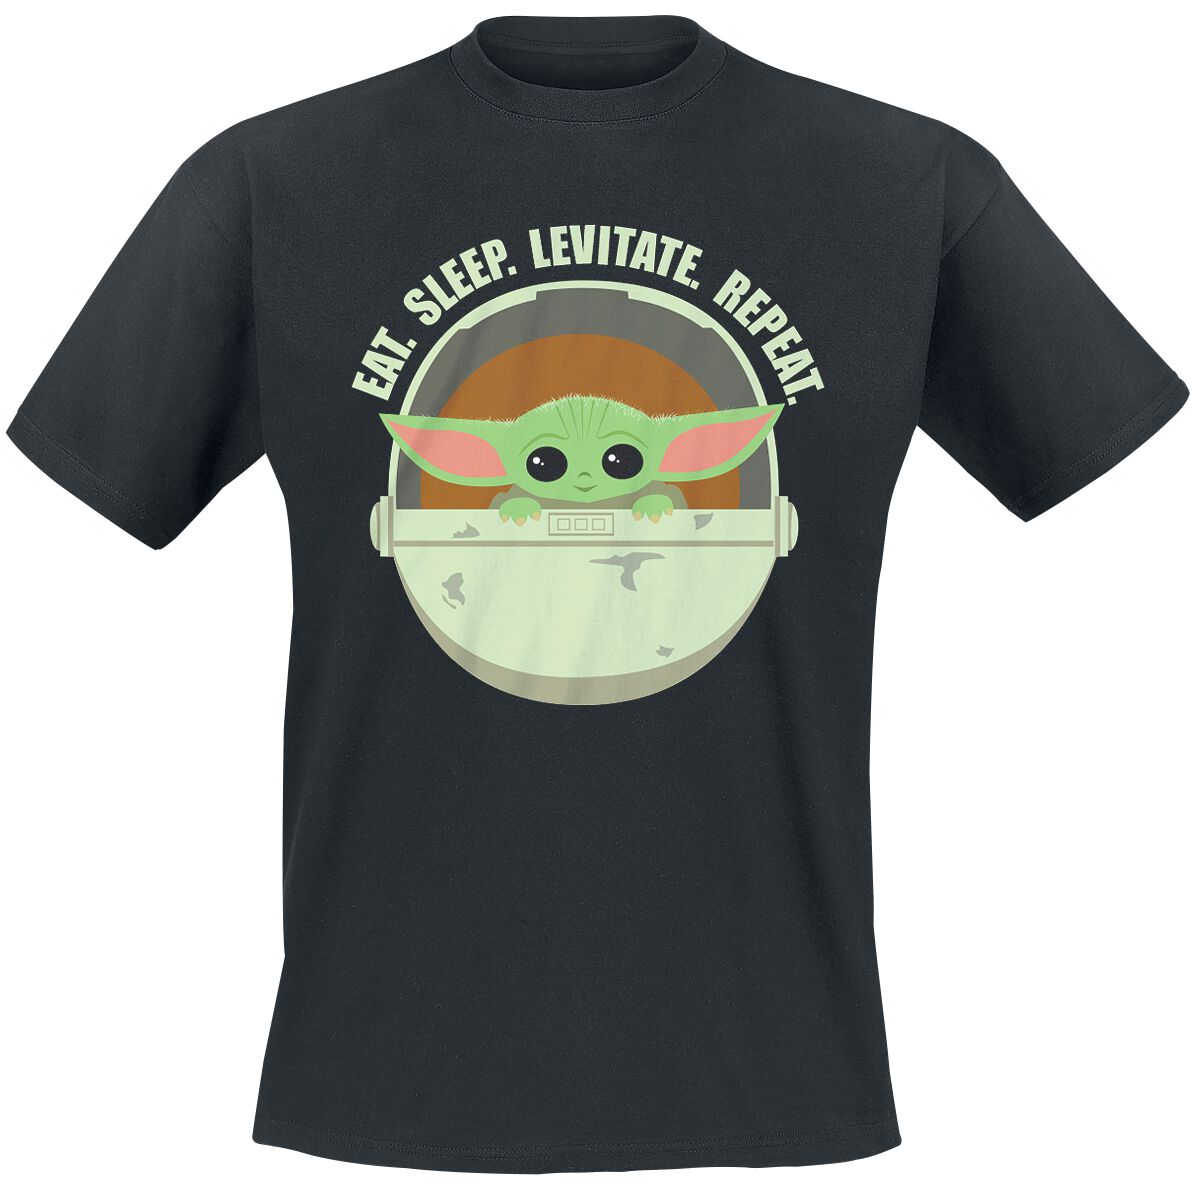 Star Wars T-Shirt - The Mandalorian - Eat. Sleep. Levitate. Repeat. - Grogu - S bis 4XL - für Männer - Größe XL - schwarz  - Lizenzierter Fanartikel